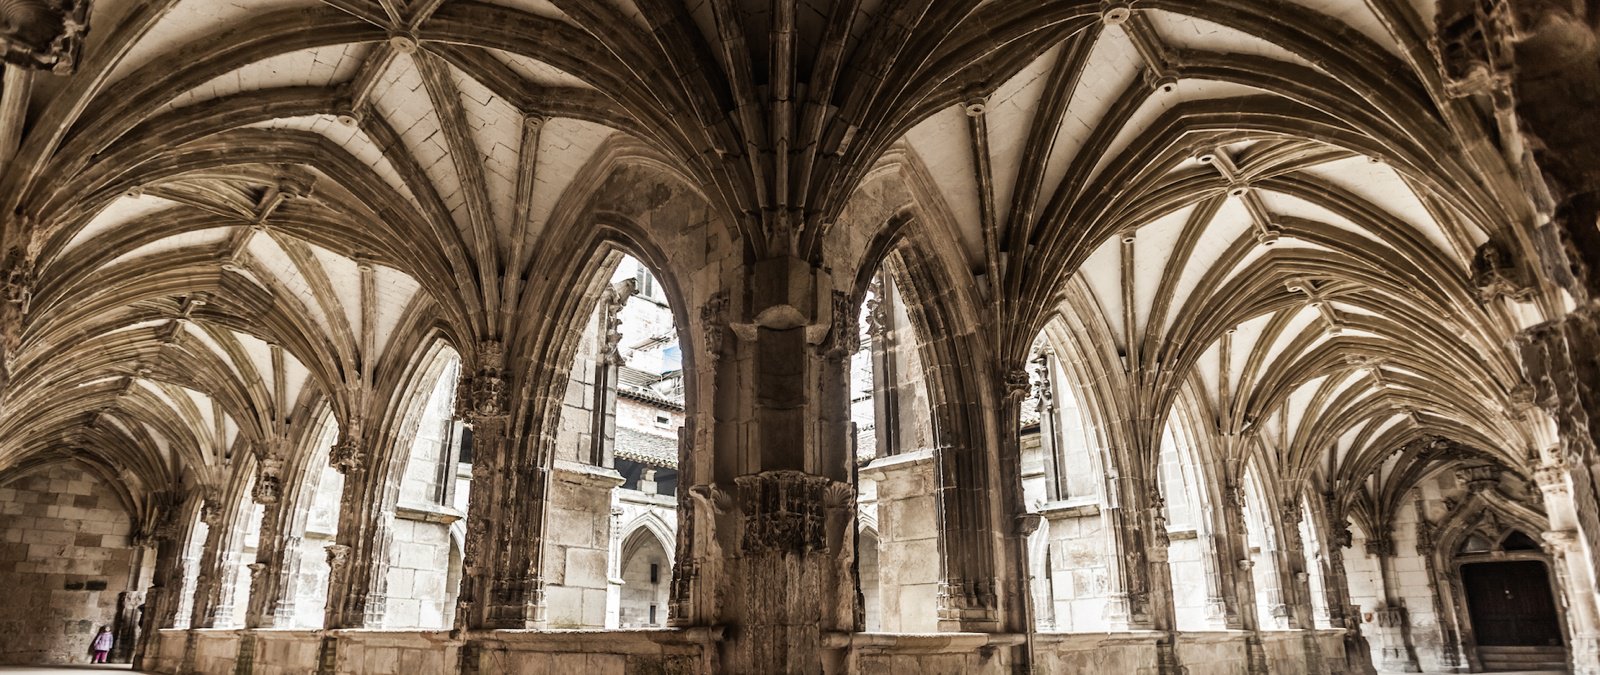 Đặc điểm của kiến trúc Gothic